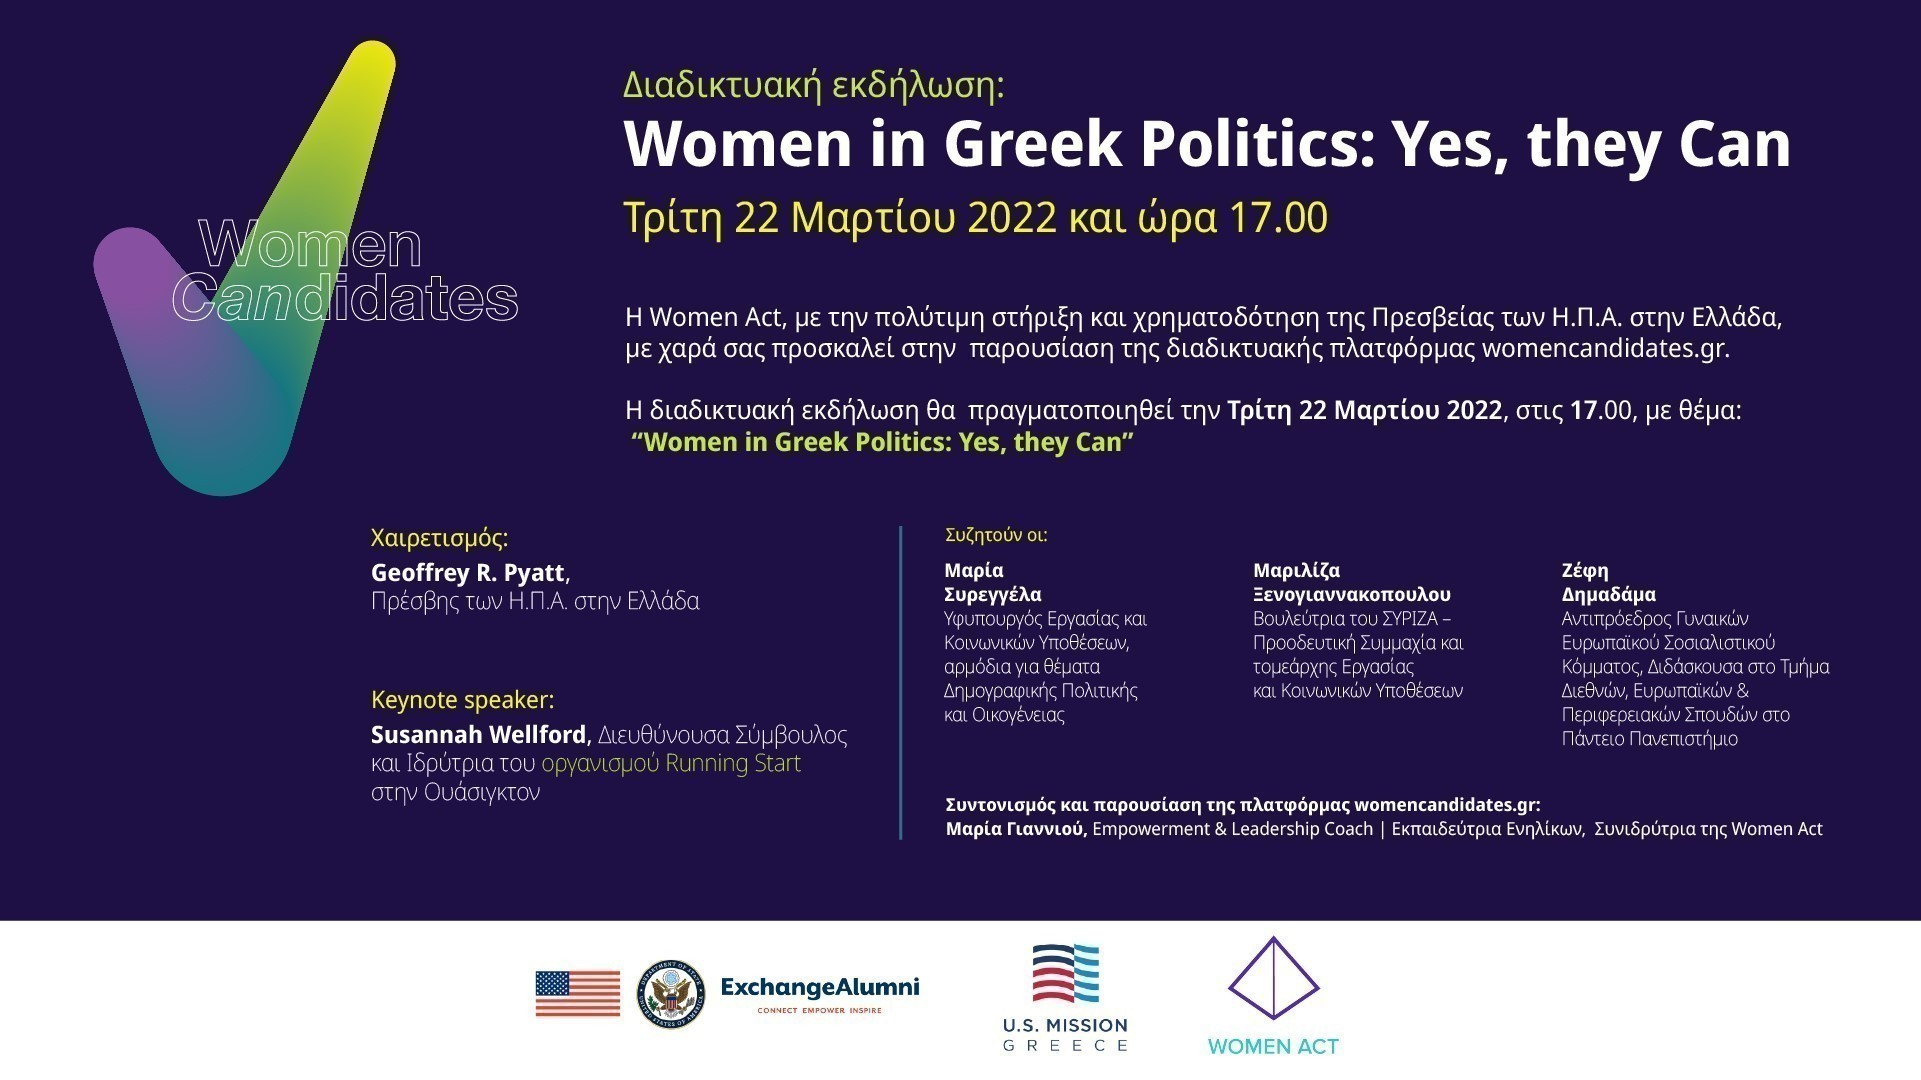 Στην παρουσίαση της διαδικτυακής πλατφόρμας womencandidates.gr, της πρώτης διαδικτυακής πλατφόρμας στην Ελλάδα που στηρίζει τη γυναικεία συμμετοχή και εκπροσώπηση στην πολιτική παρέχοντας όλα τα απαραίτητα εργαλεία στις γυναίκες που επιθυμούν να εκλεγούν σε δημόσια αξιώματα, προσκαλεί η Women Act